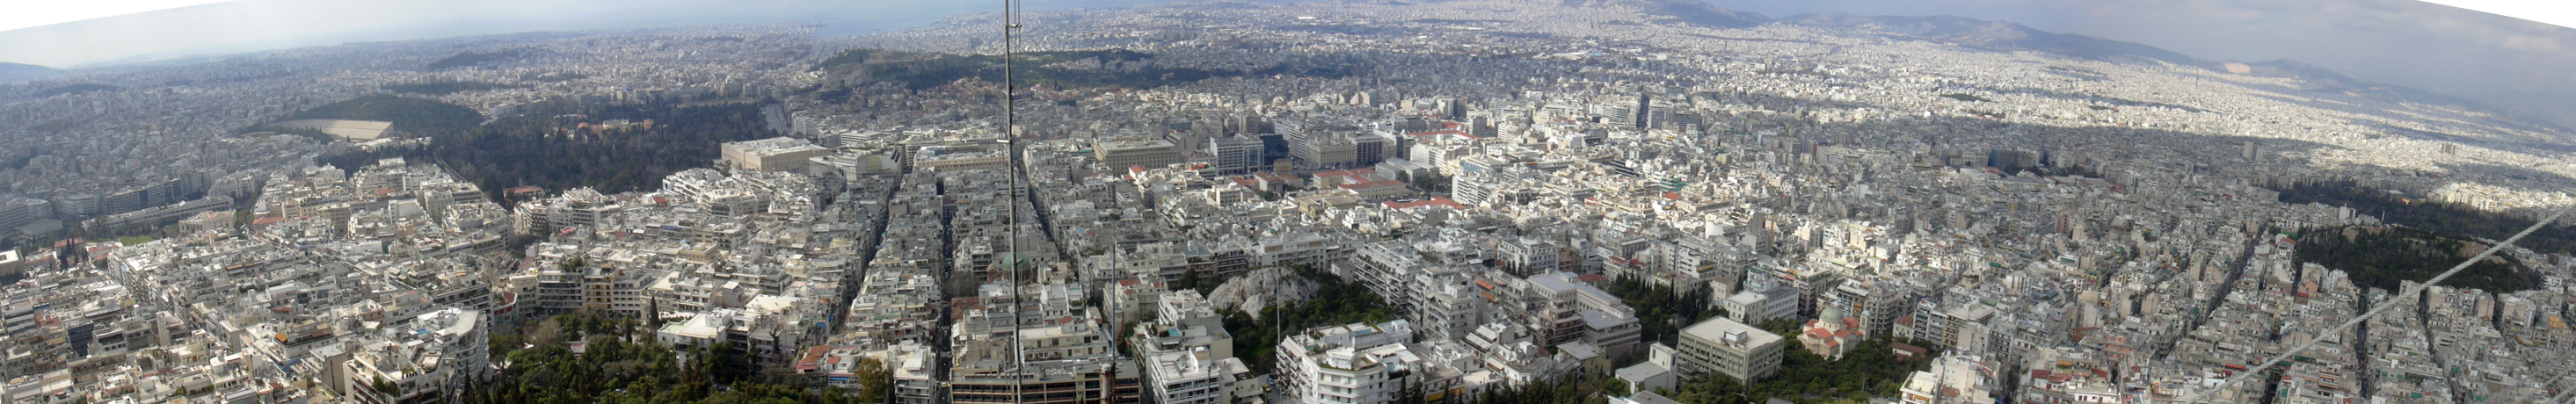 Athen, Panoramablick vom Lykavittos zu Akropolis und Piräus